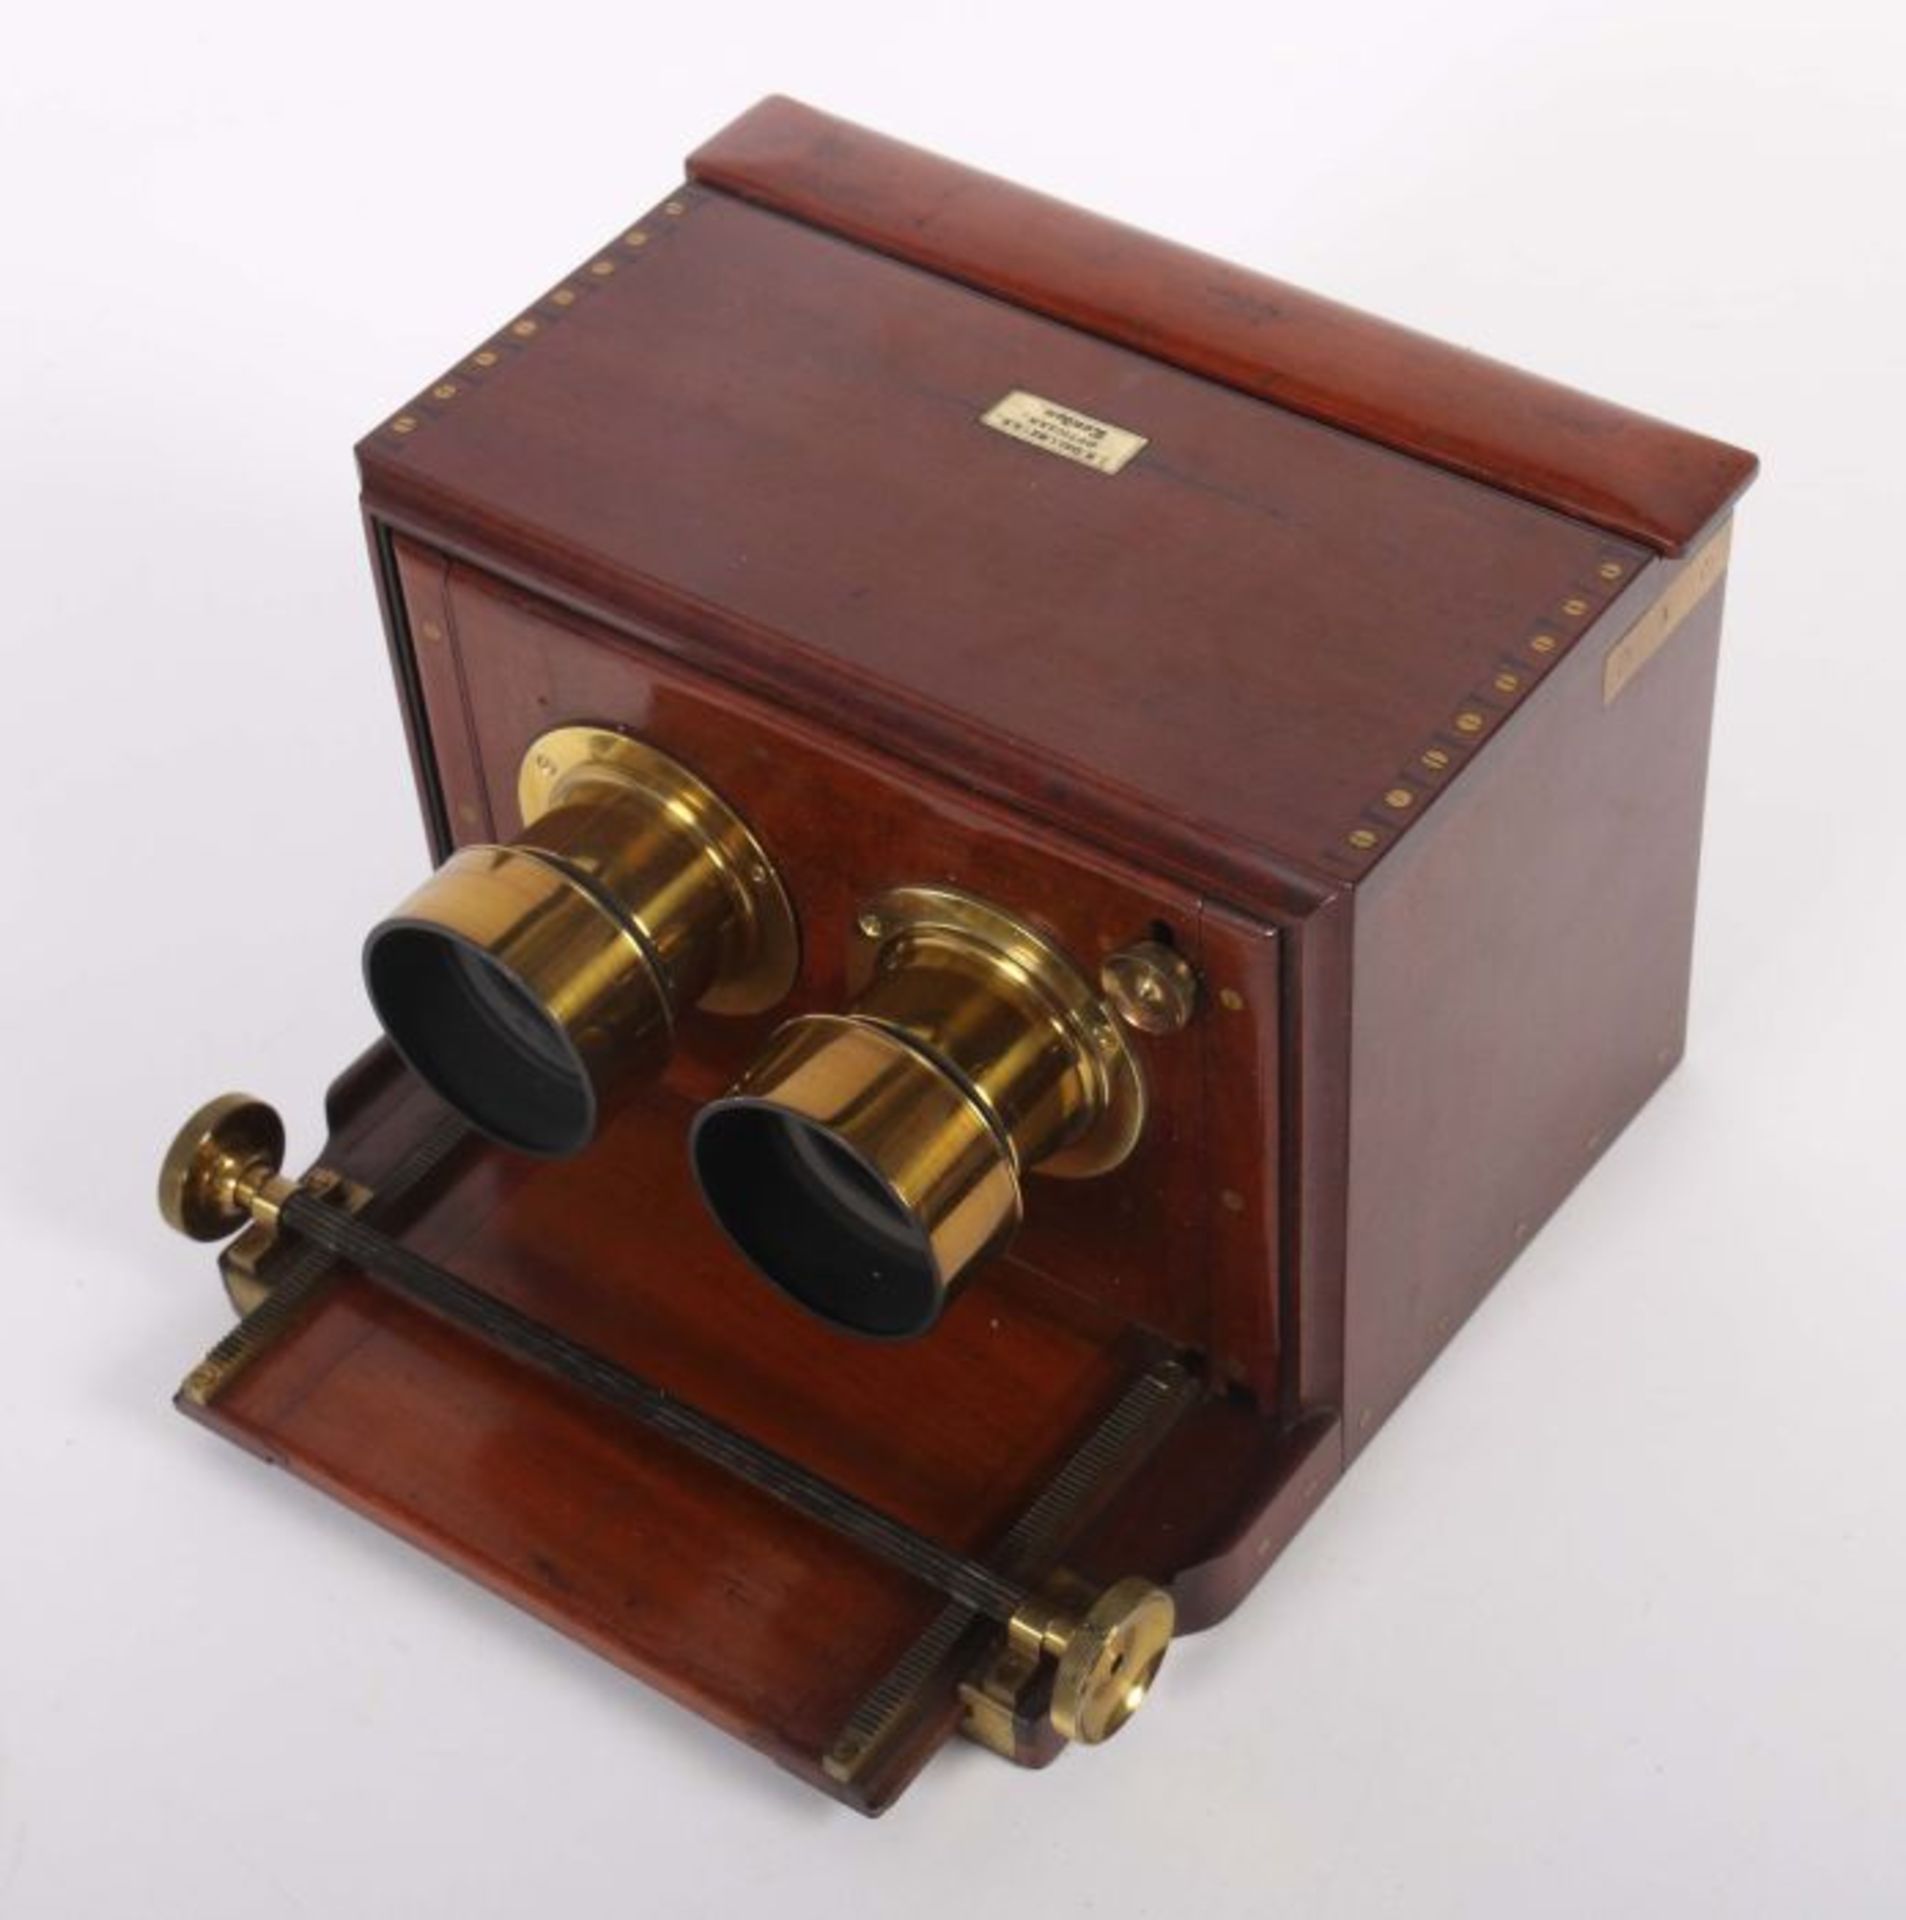 Seltene Schiebekasten-StereokameraJ. H. Dallmeyer, London, um 1860/70, Mahaghonigehäuse mit - Bild 2 aus 4